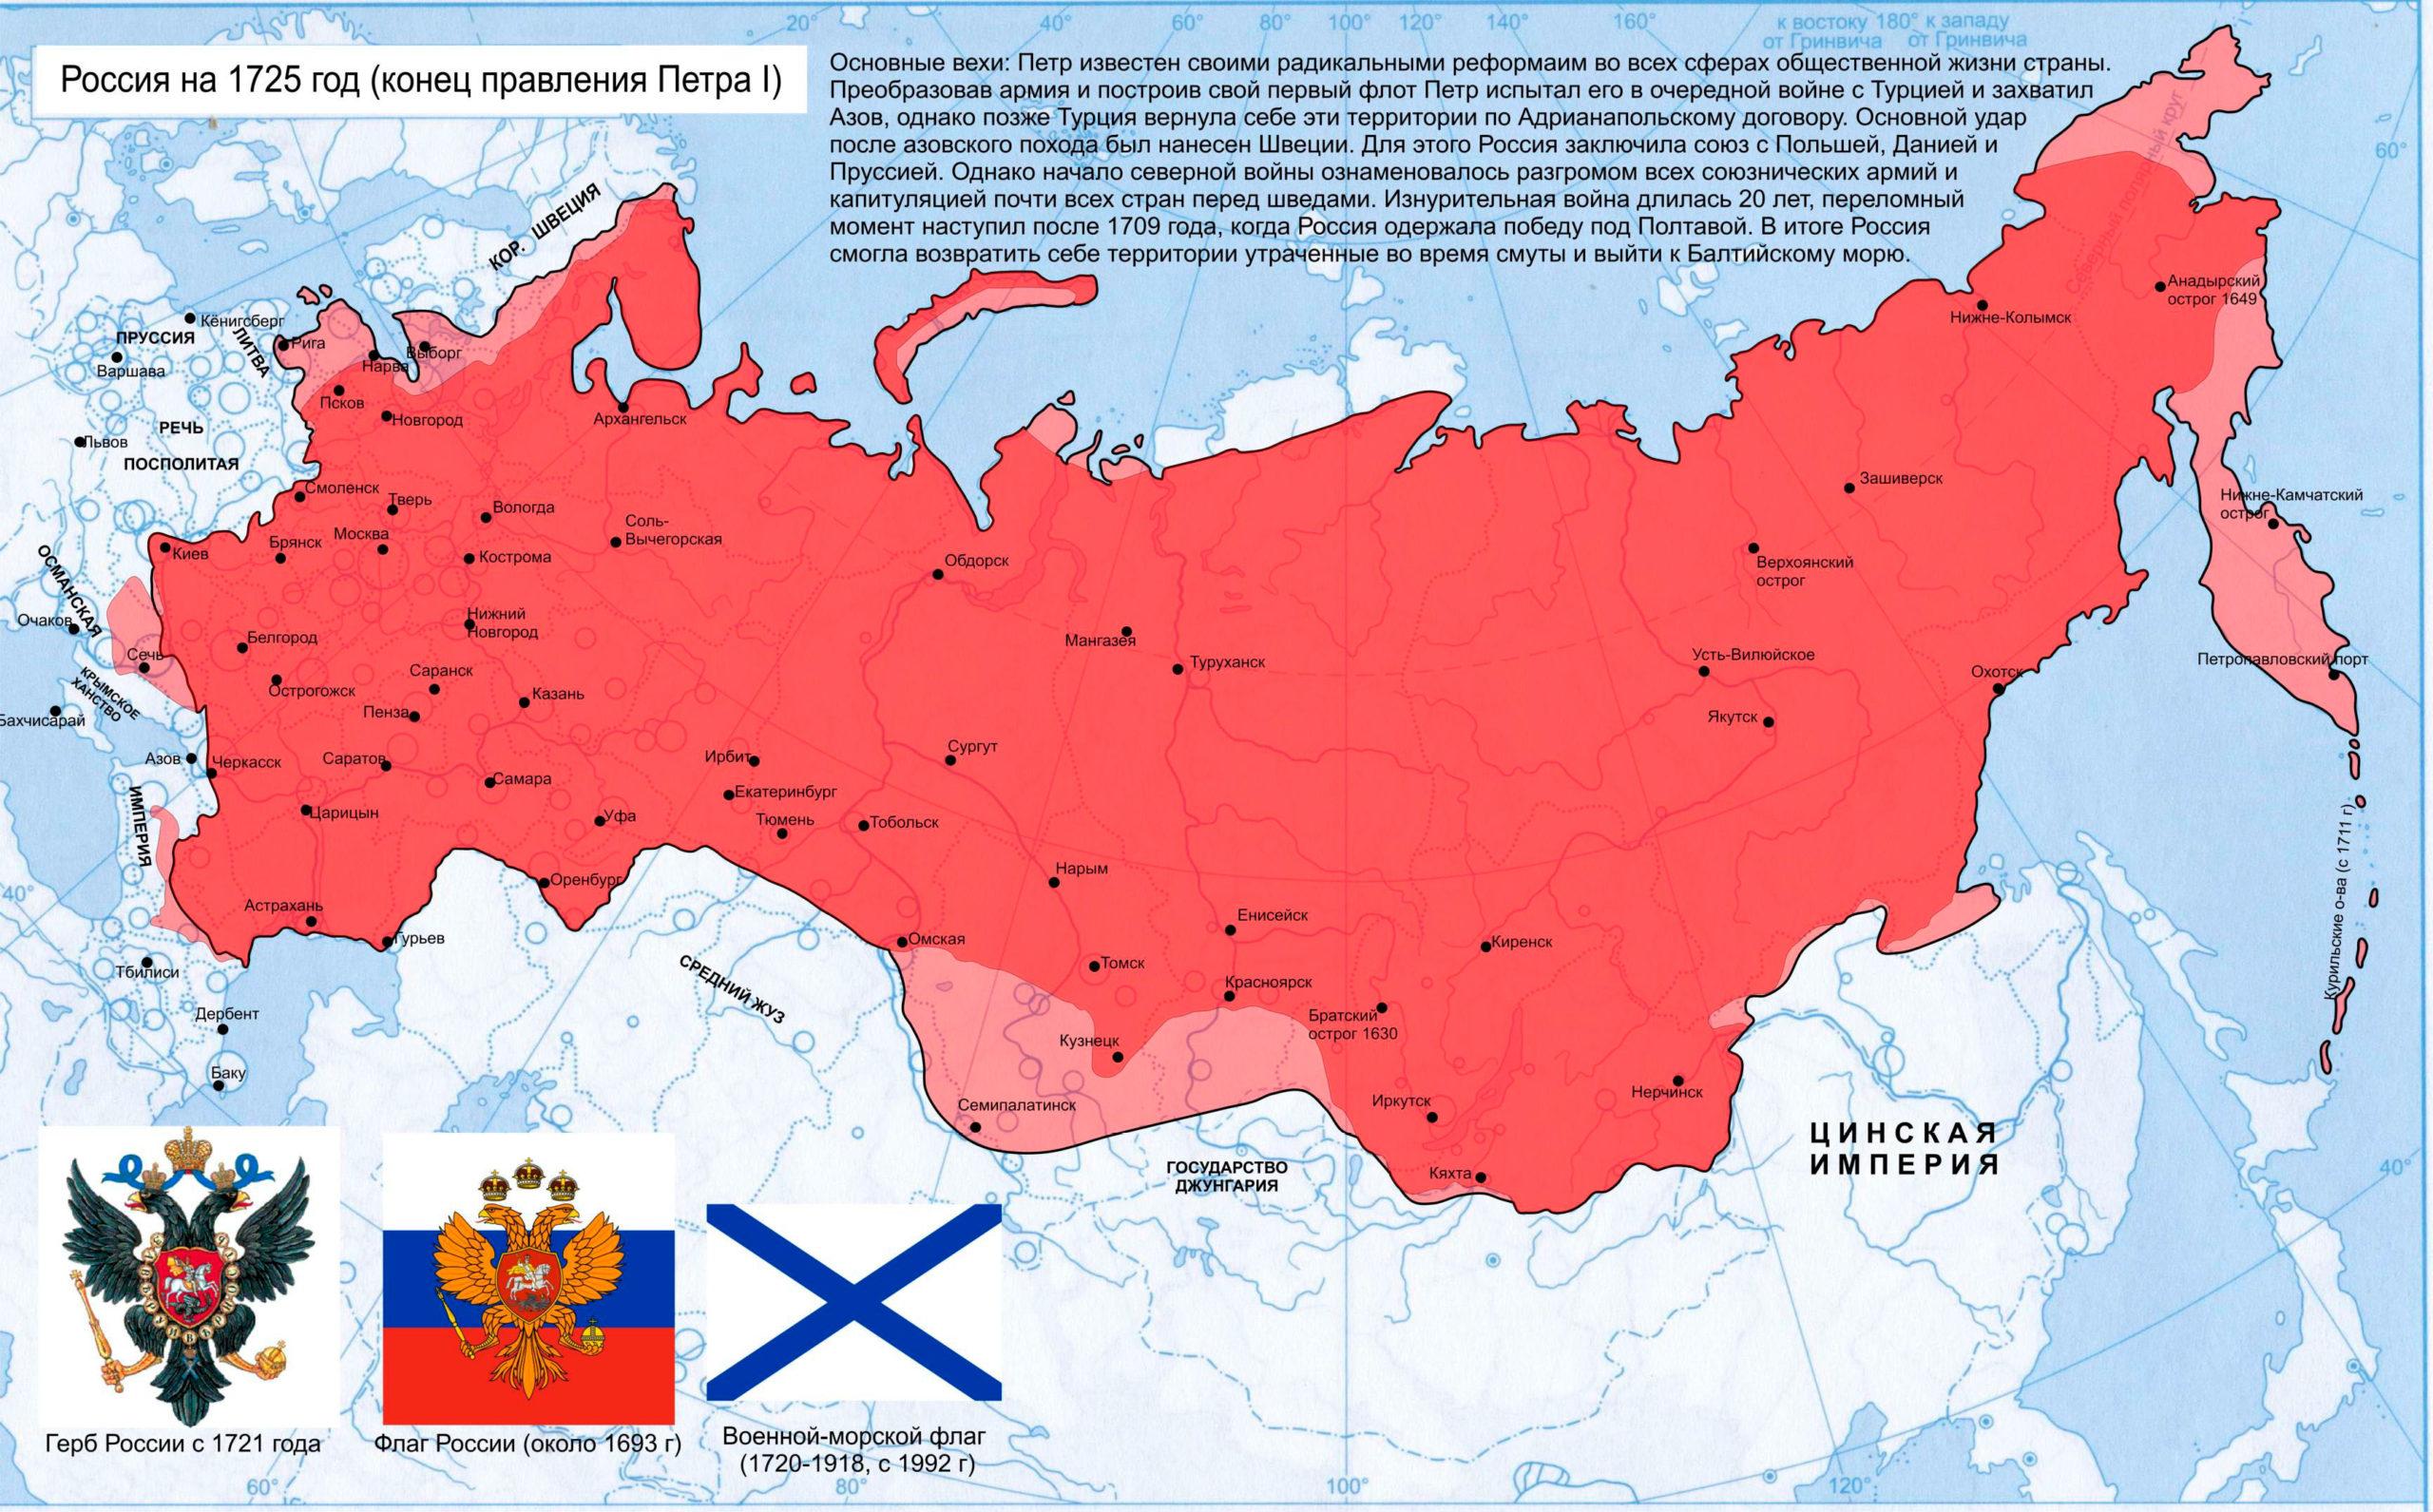 Самое длинное правление в россии. Правление Российской империи. Как нарисовать карту Российской империи. Размер России с Запада на Восток.